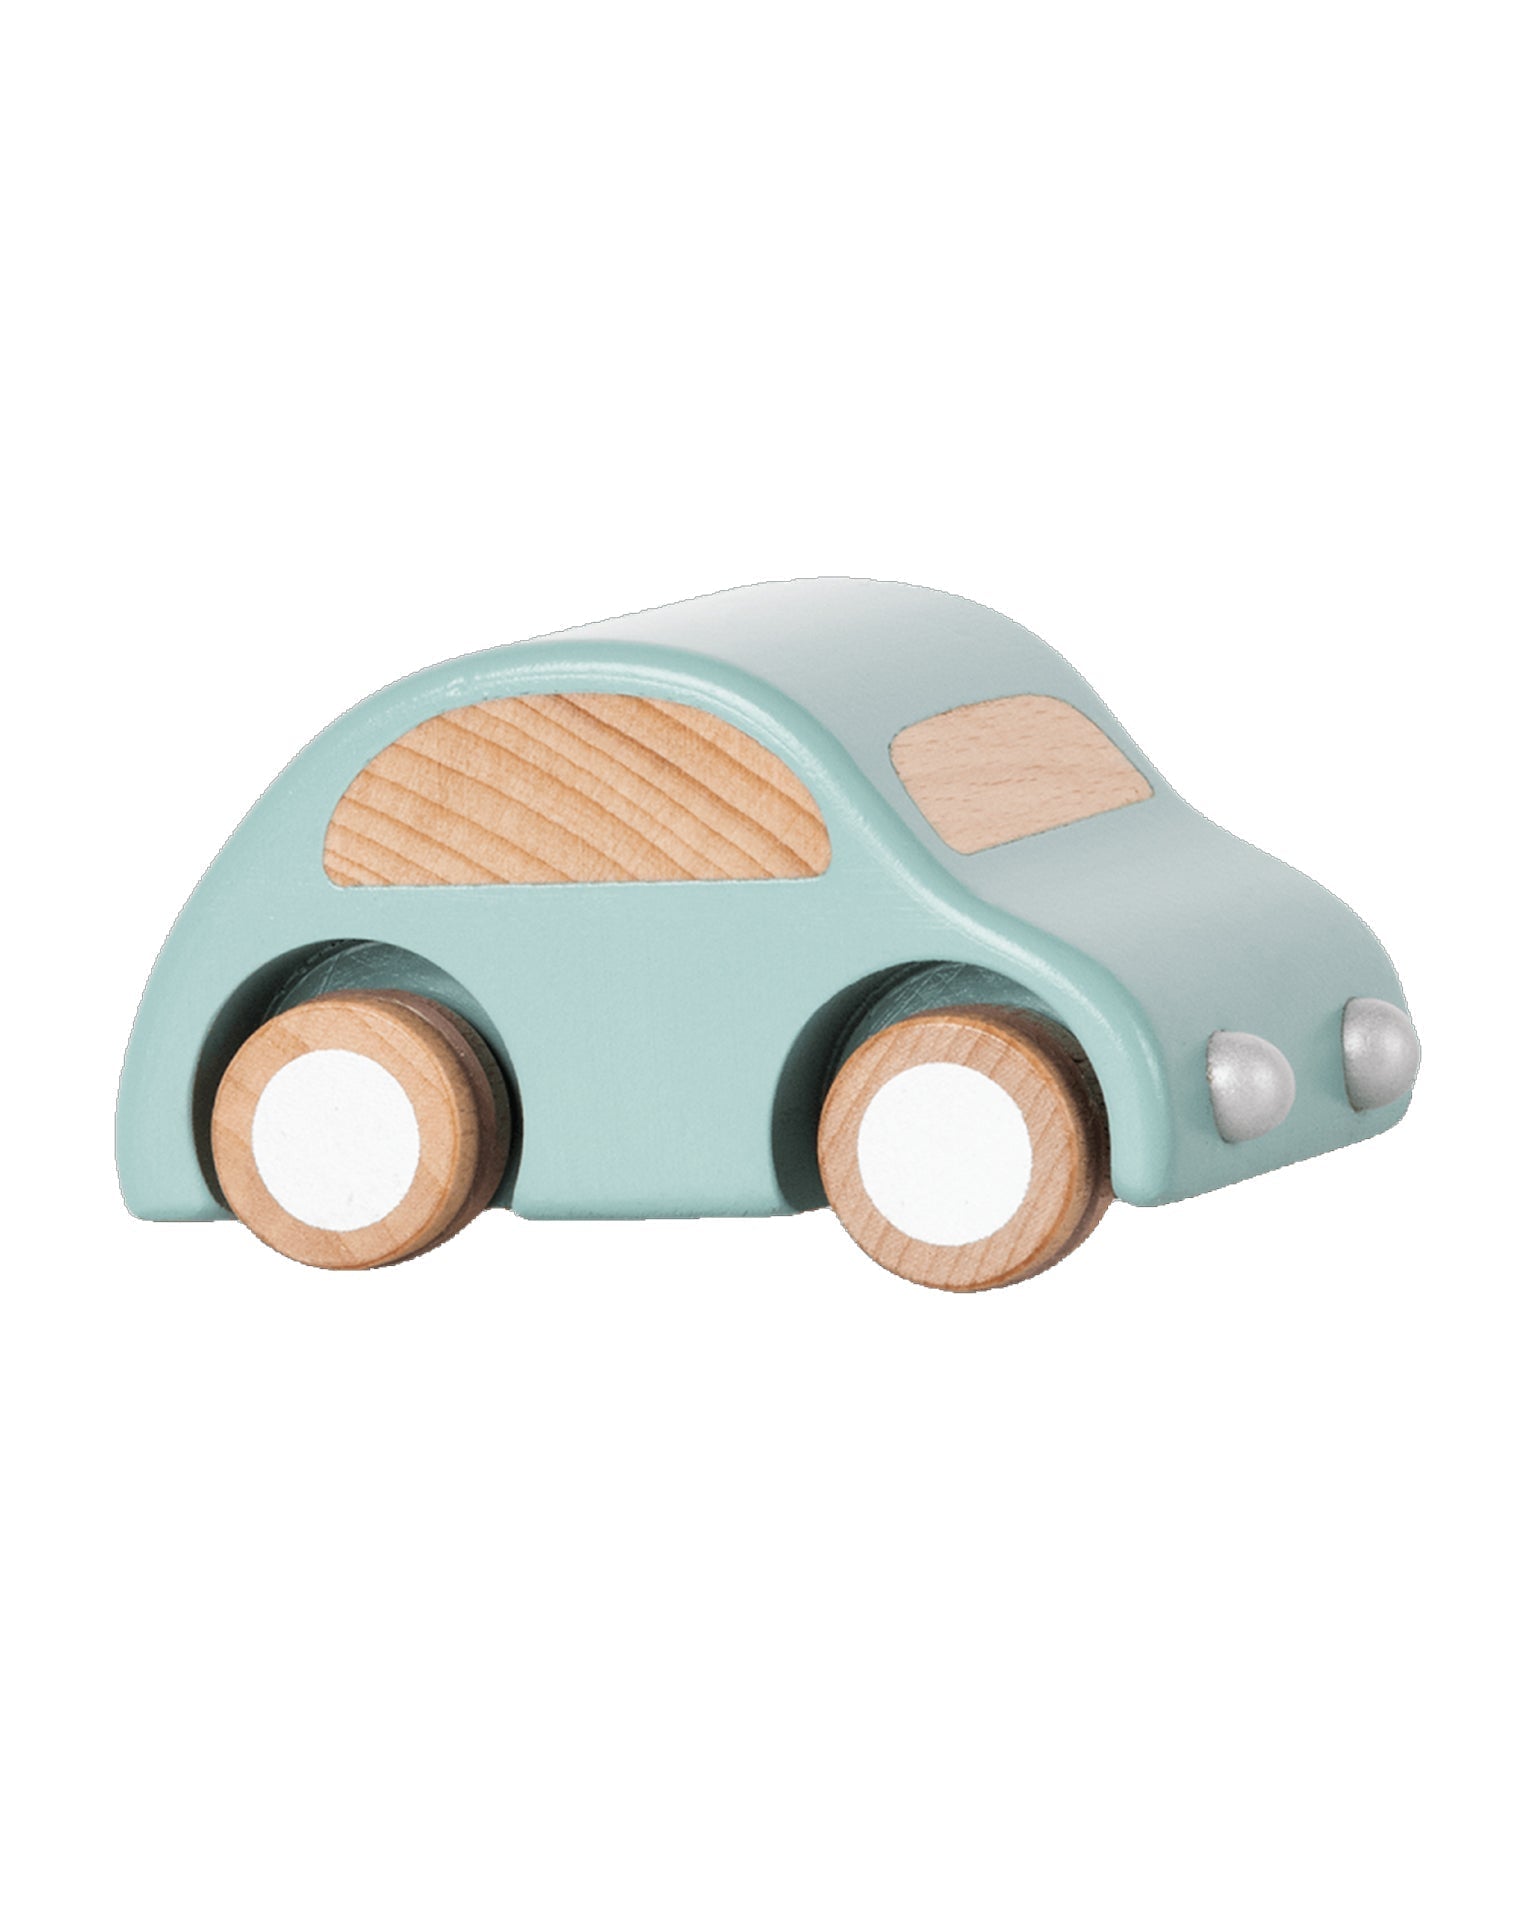 Little maileg play wooden car in light blue